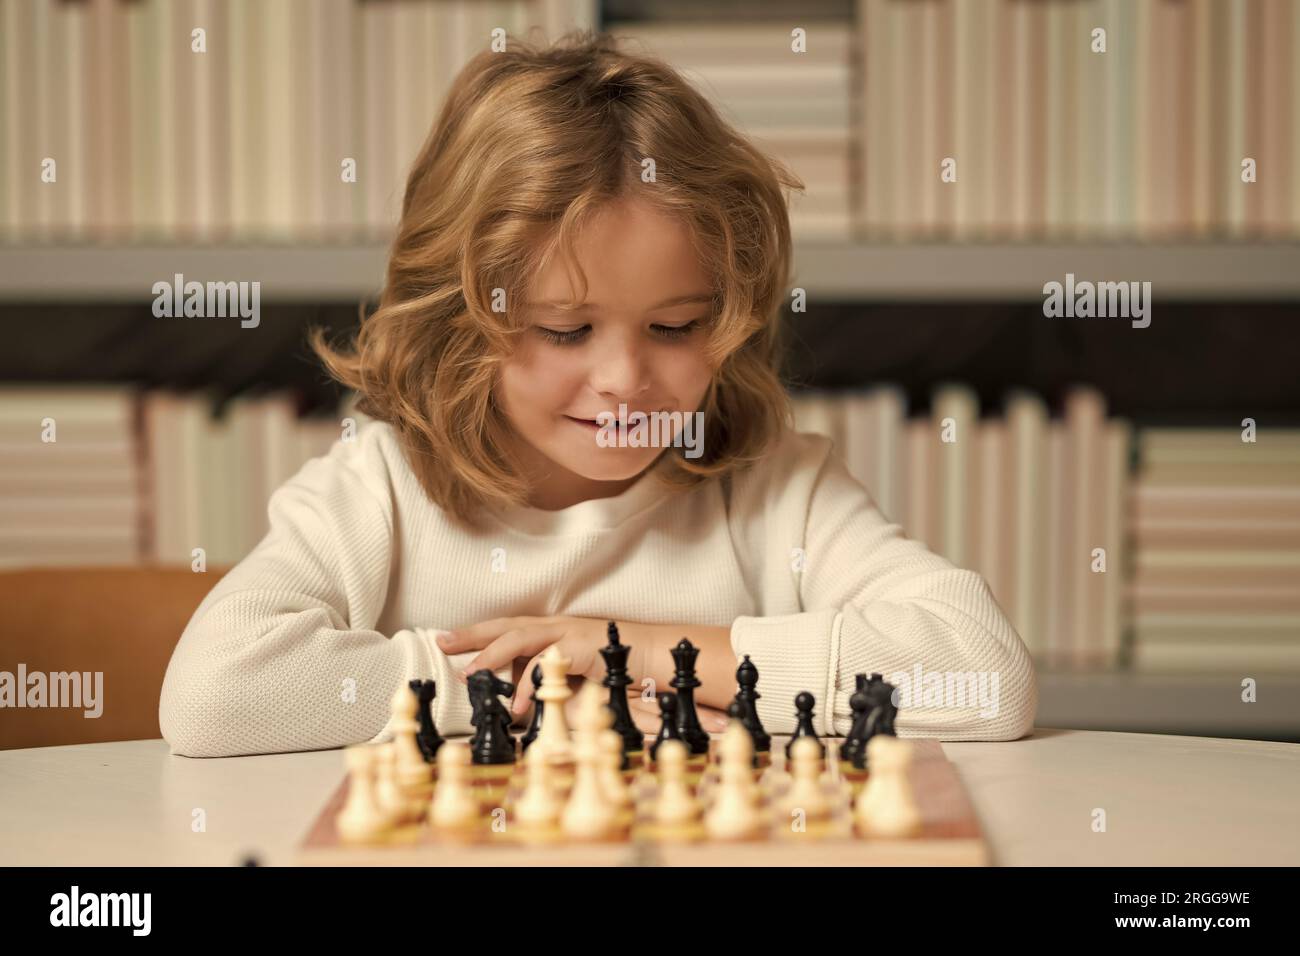 Kluges, konzentriertes und denkendes Kind, das Schach spielt. Kinder Frühentwicklung. Ein Junge, der zu Hause Schach spielt. Porträt aus der Nähe, komisches Gesicht. Stockfoto